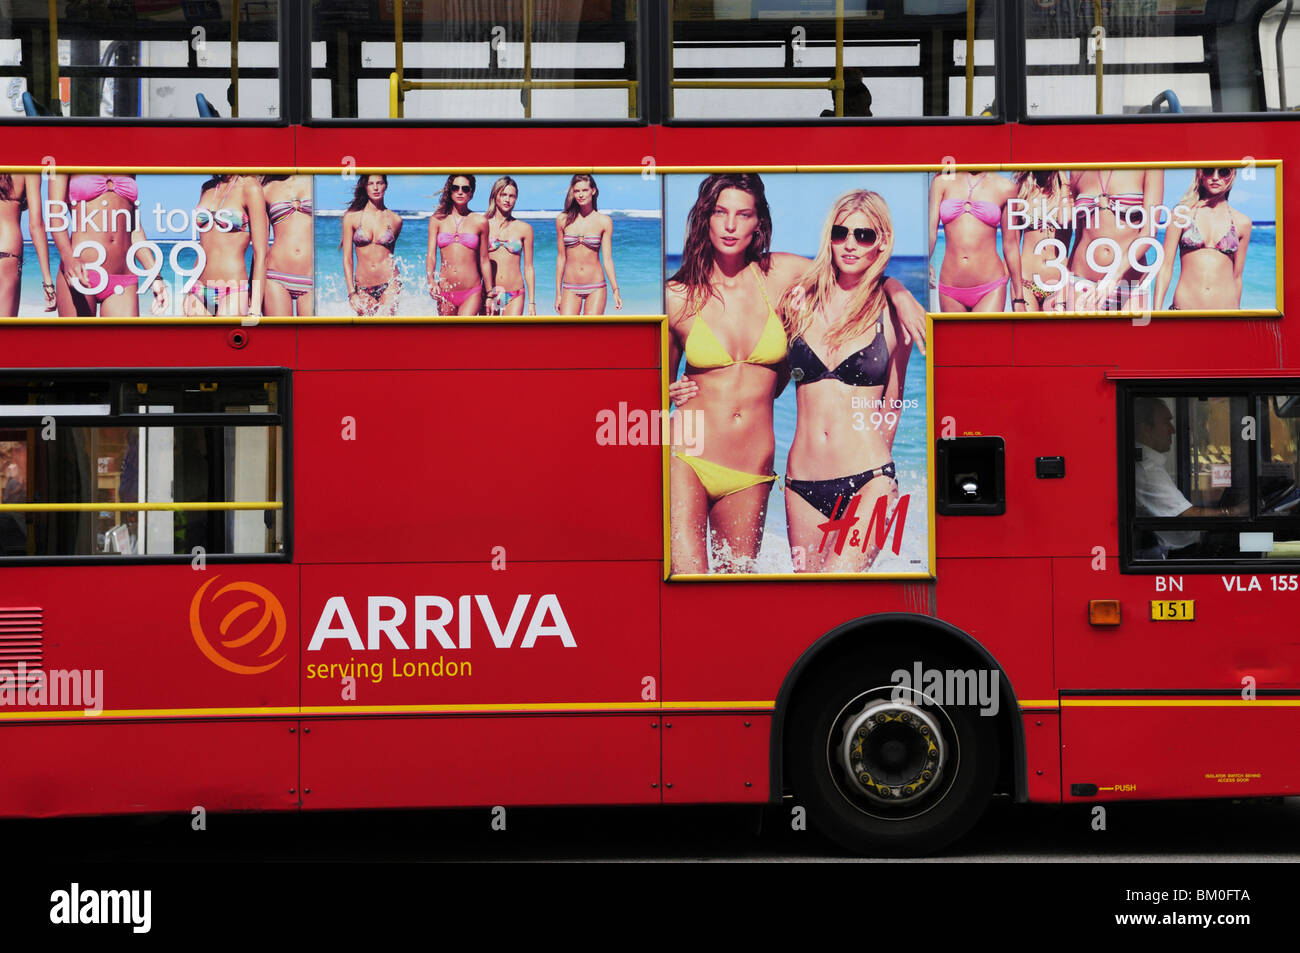 London bus rouge arriva avec H&M publicité bikini, Oxford Street, London, England, UK Banque D'Images